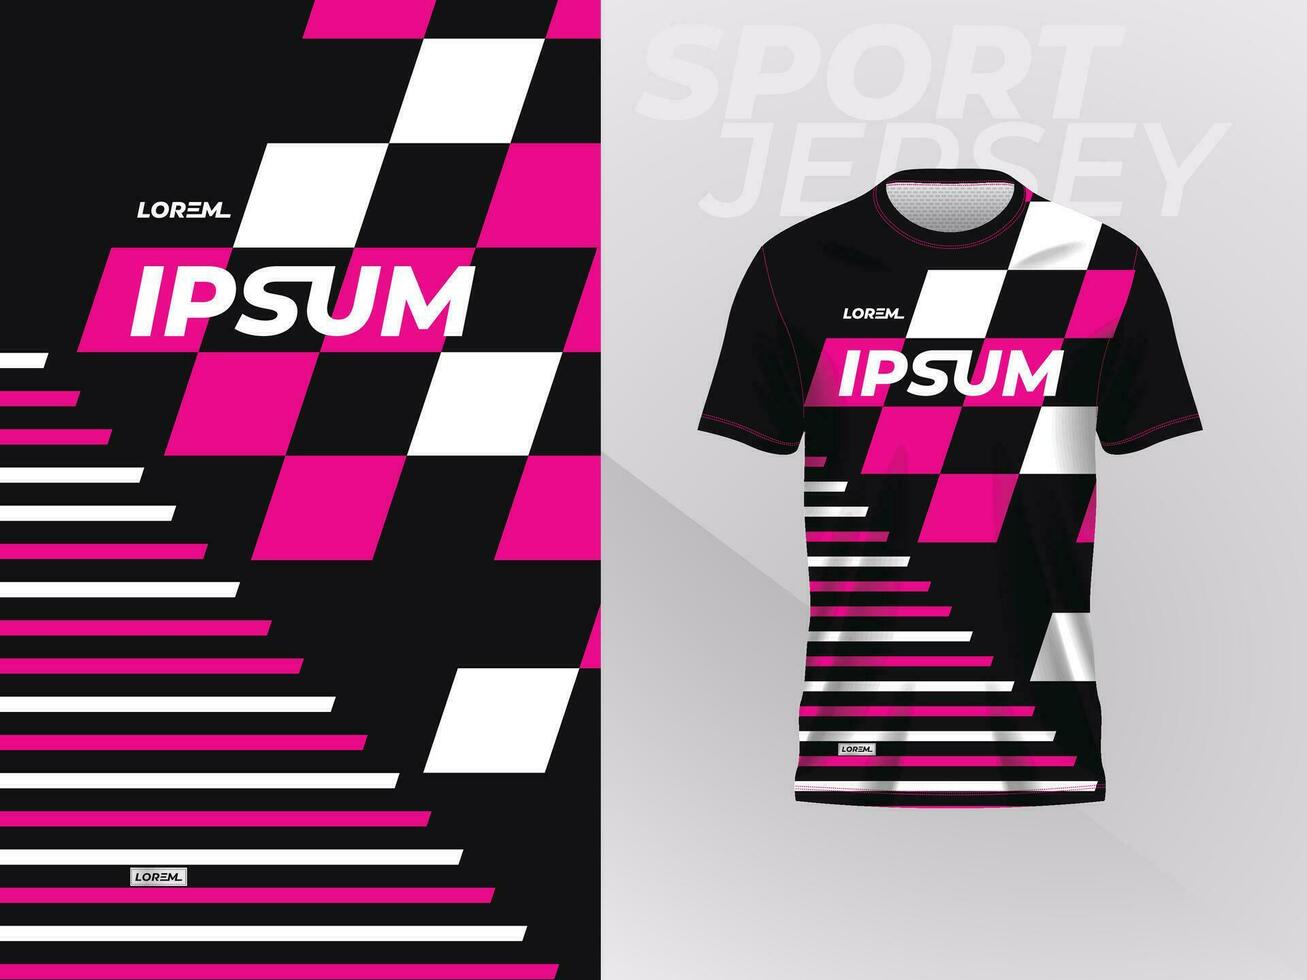 nero rosa camicia sport maglia modello modello design per calcio, calcio, da corsa, gioco, motocross, Ciclismo, e in esecuzione vettore